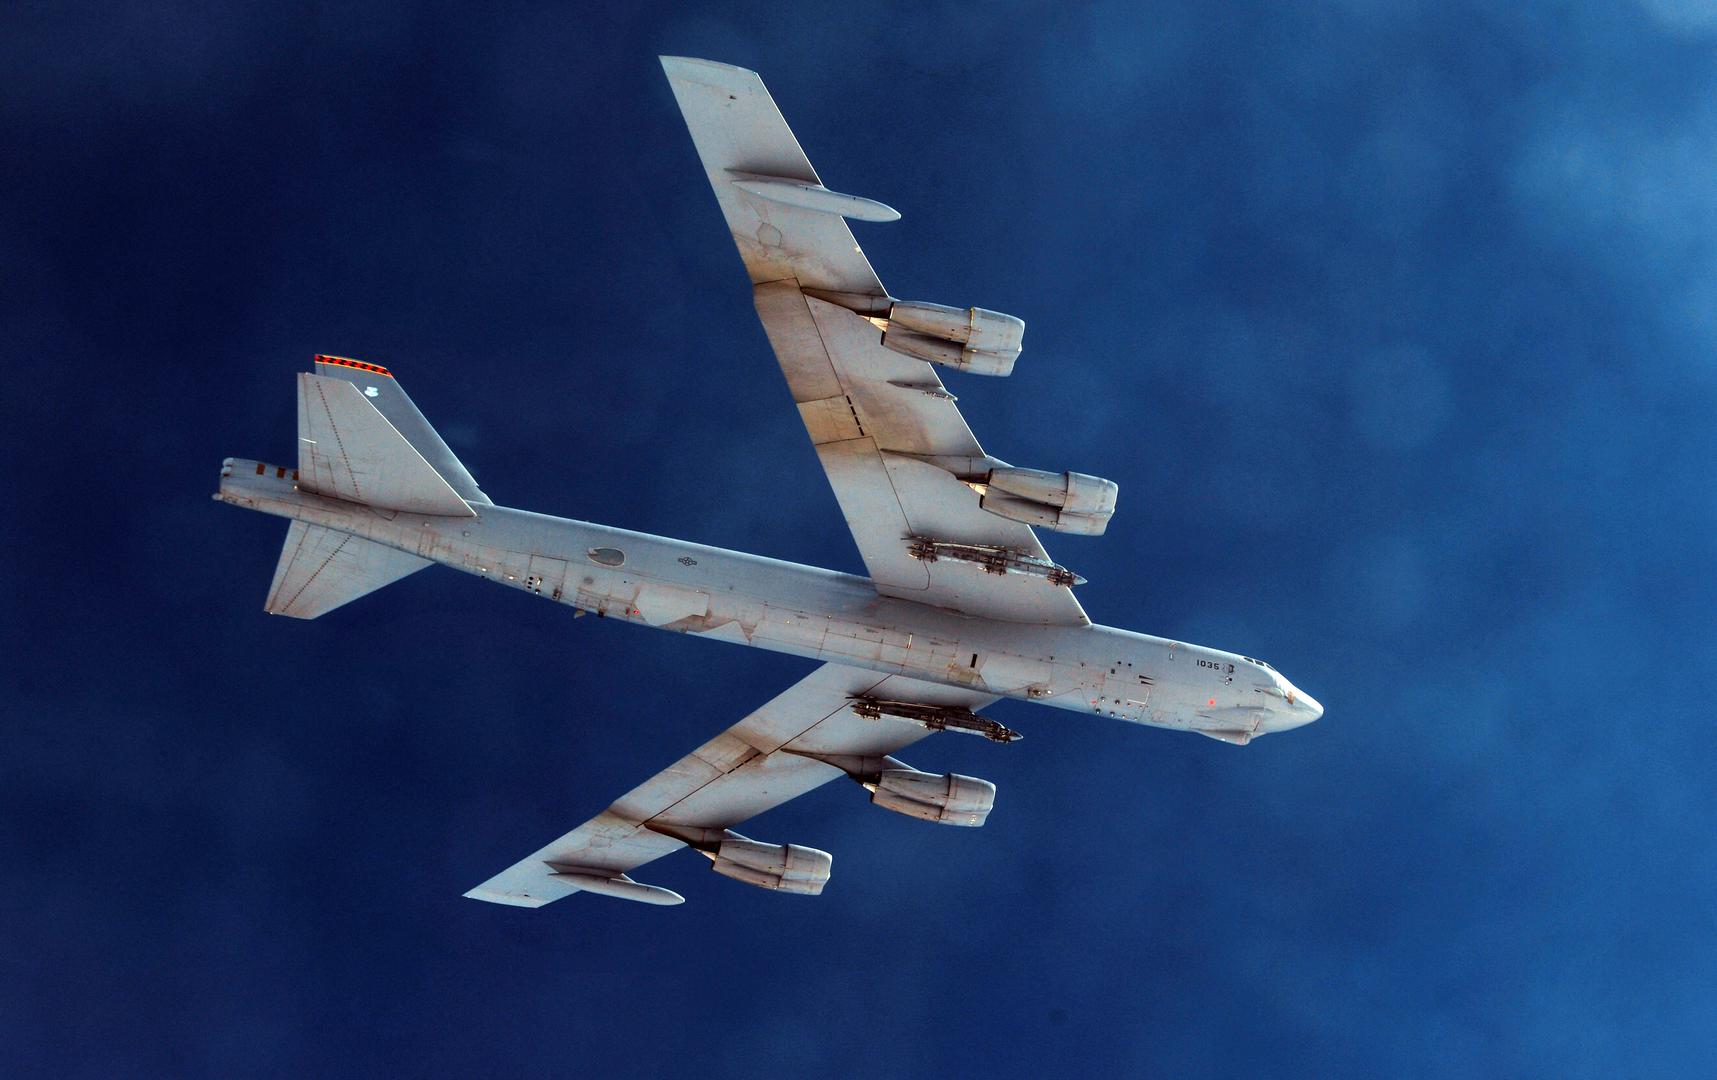 Zračna baza Minot nalazi se blizu grada Minota u Sjevernoj Dakoti. Tamo se nalazi 5. krilo bombardera, kao i 91. raketno krilo - oba dio Zapovjedništva za globalni udar zračnih snaga. Ove snage koriste se za održavanje i upravljanje bombarderima B-52H.